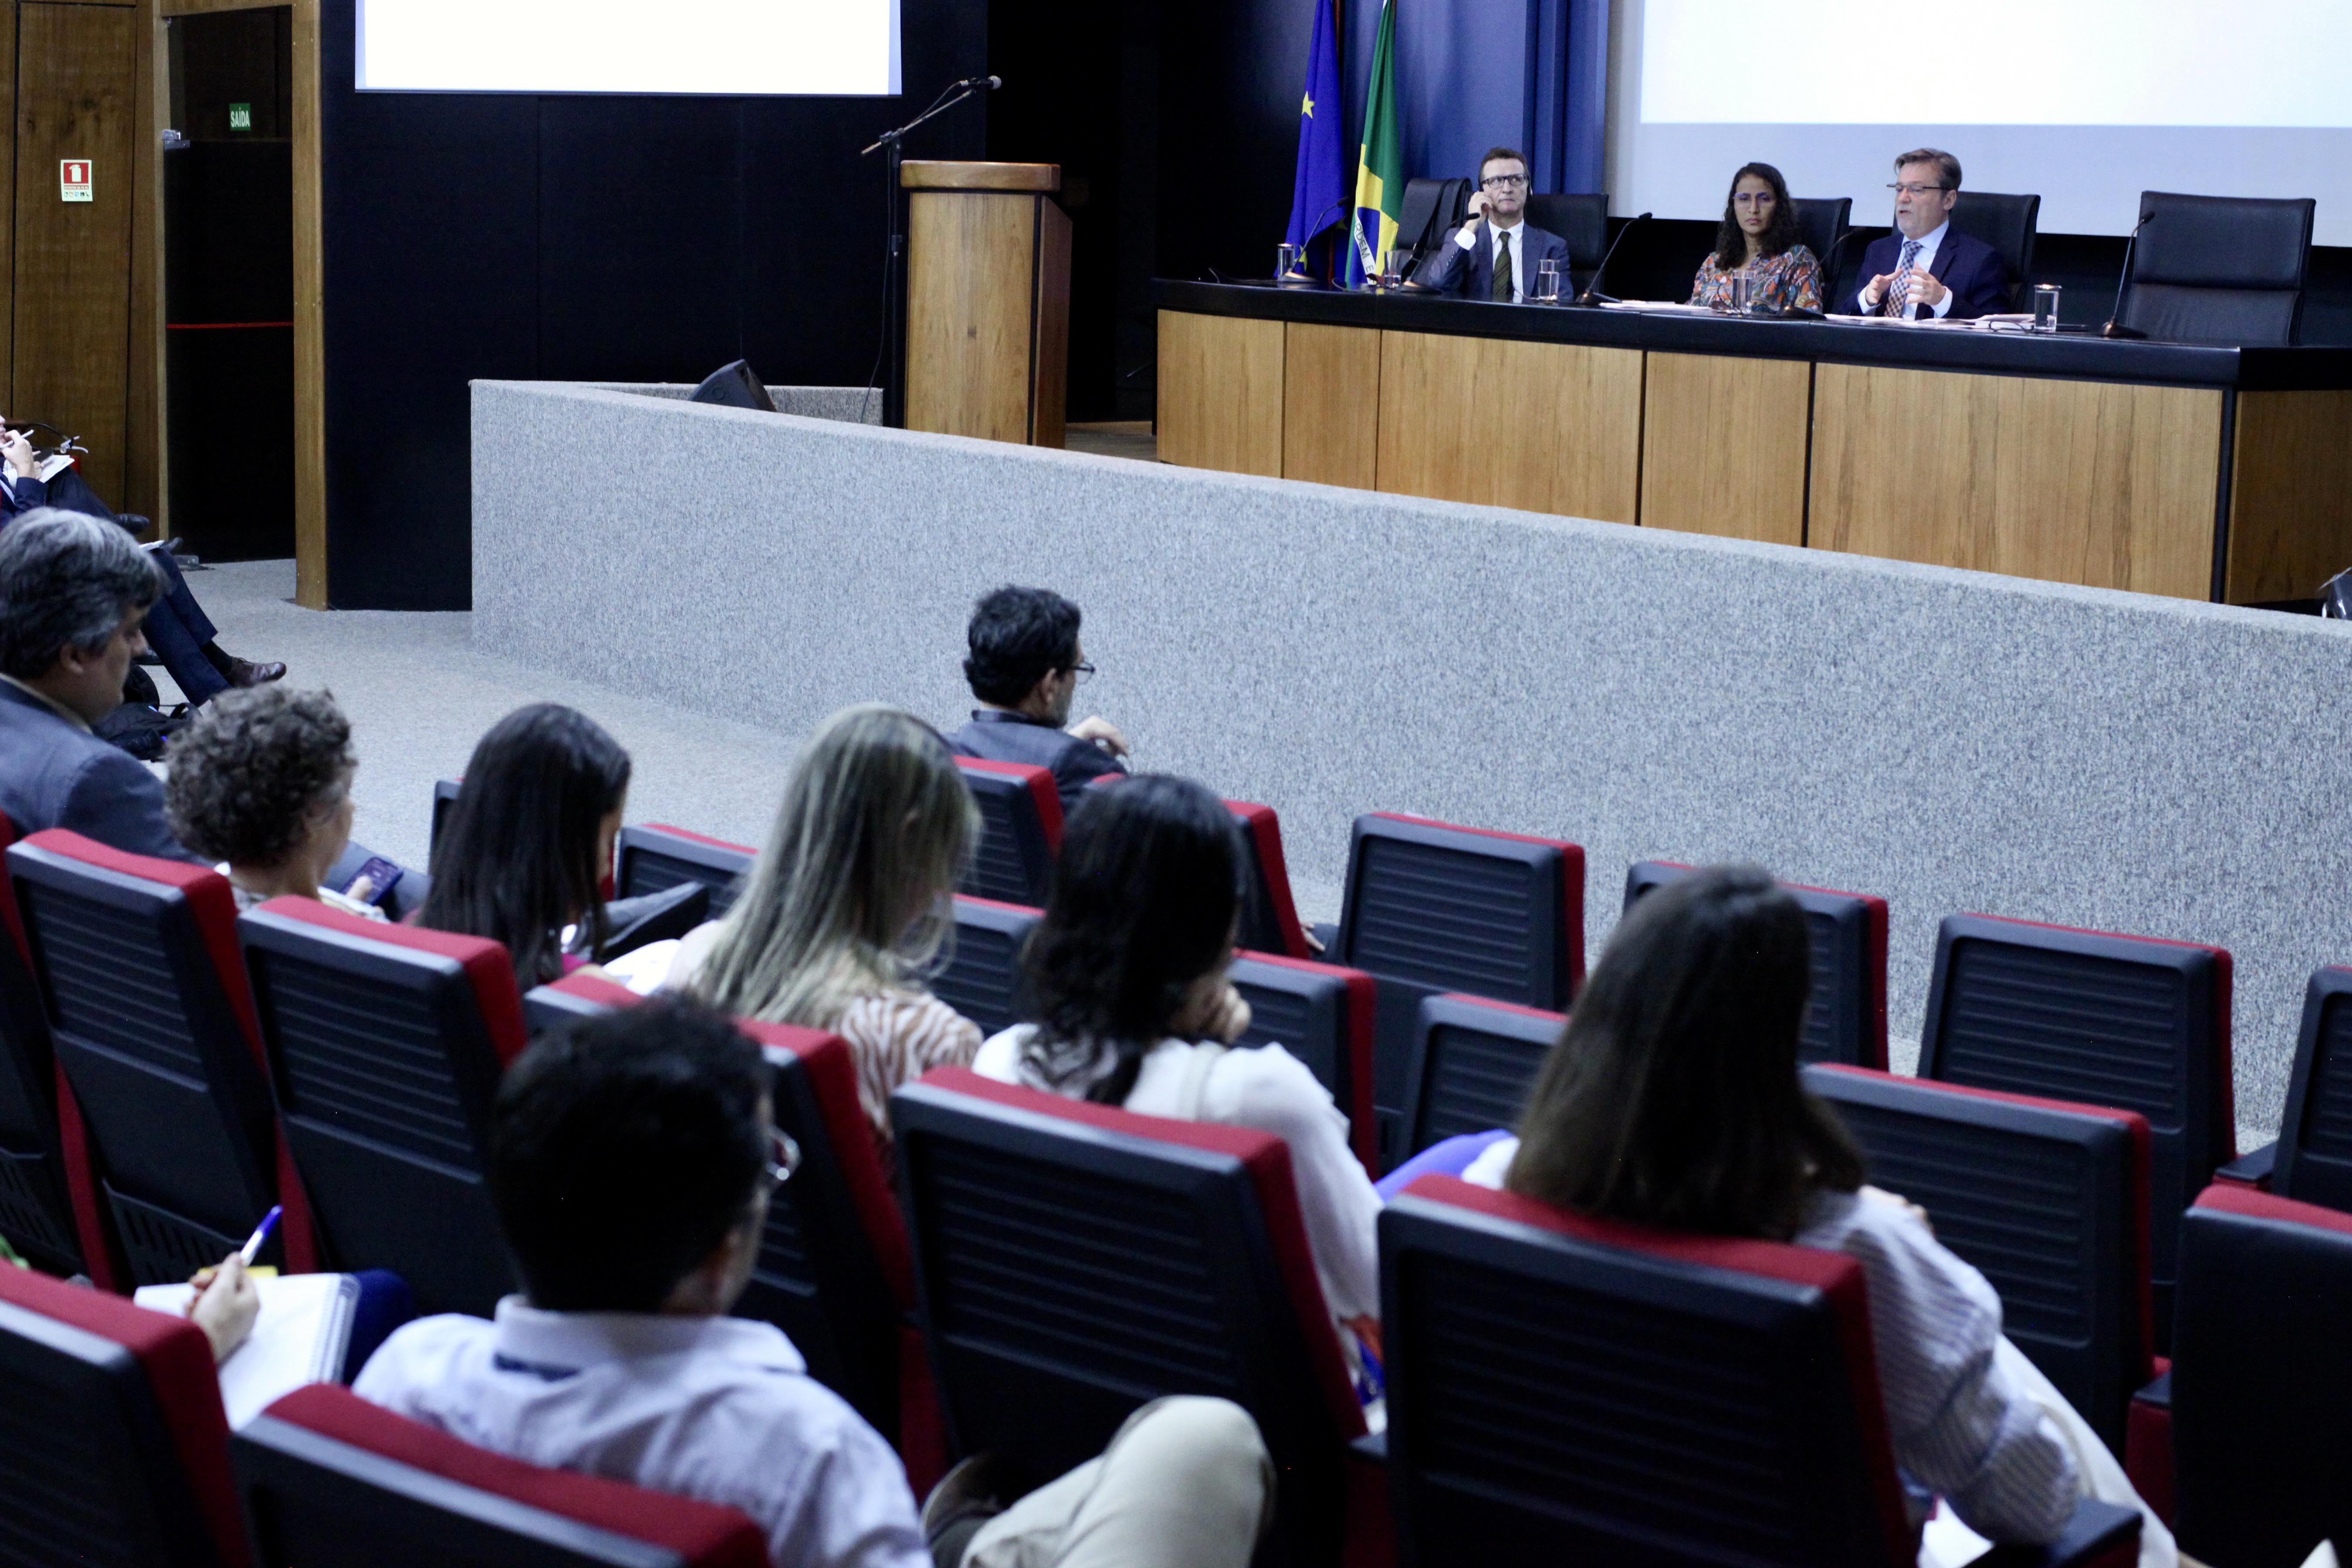 44ª Rede GIRC - 17 out 2023 - Brasil - União Europeia: Diálogos  Internacionais sobre Governança, Riscos e Controle - Rede GIRC - GestGov